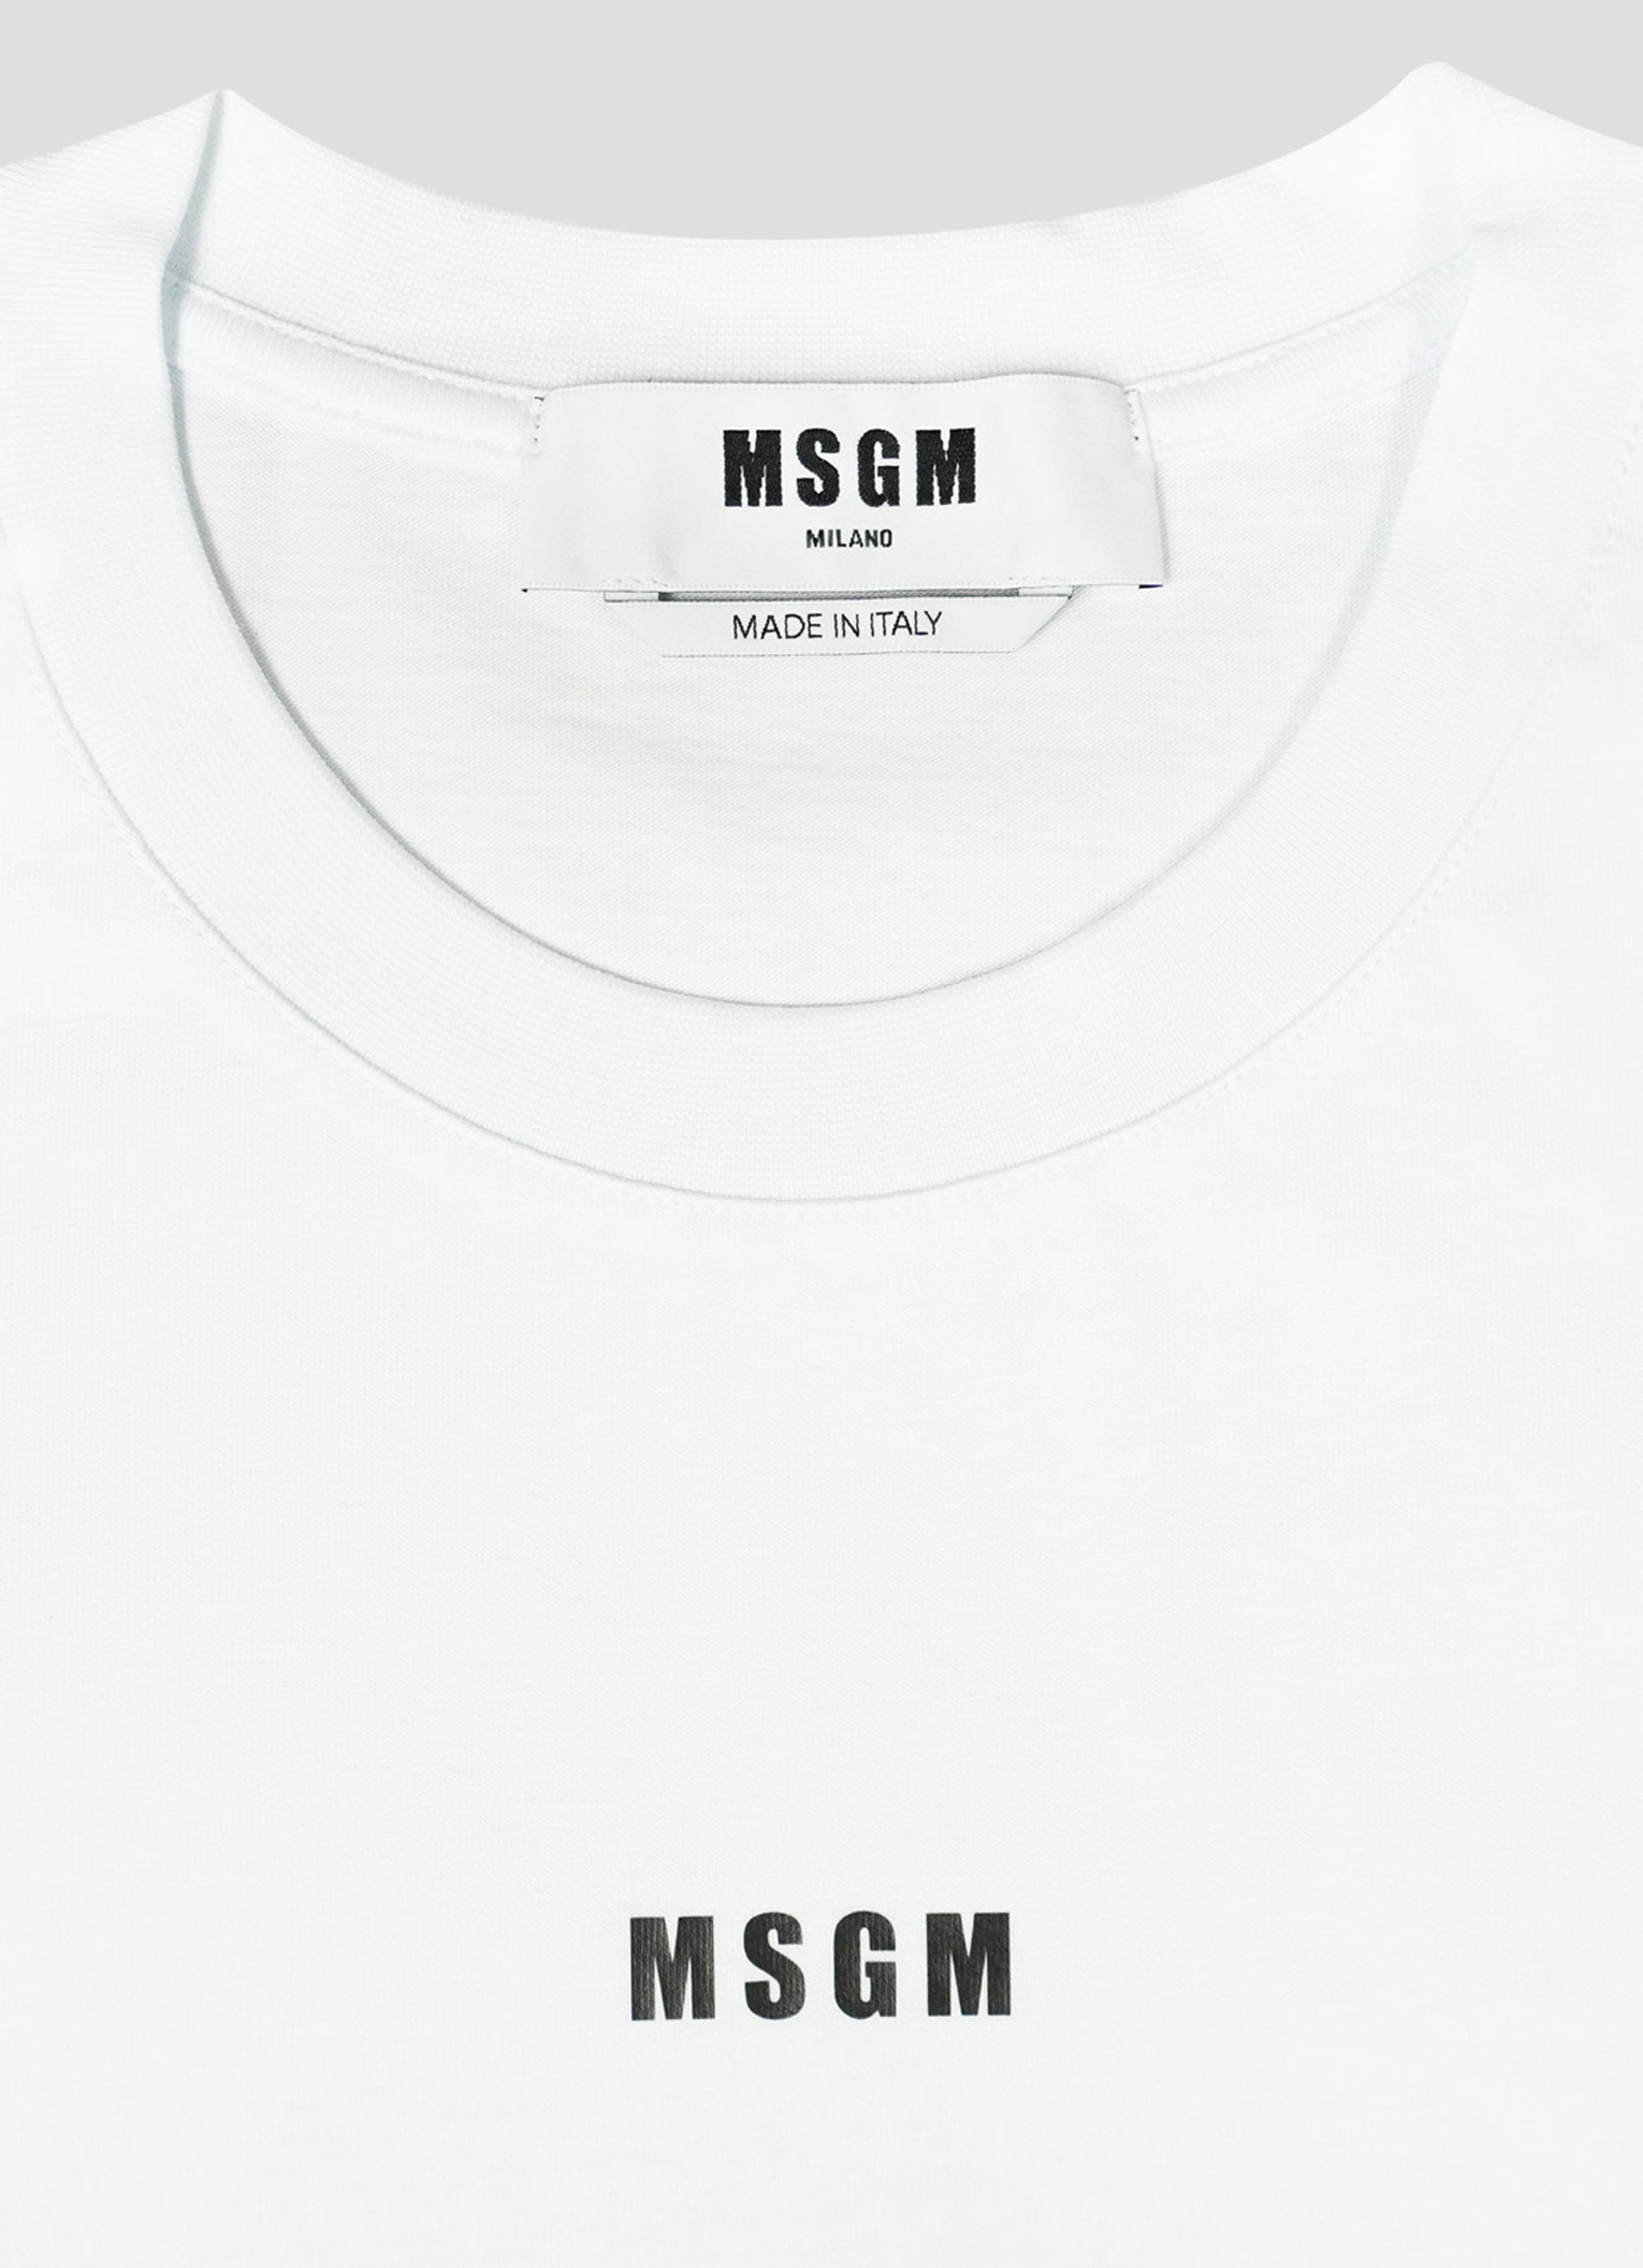 MSGM　ミニロゴ　Tシャツ　ホワイト　メンズ